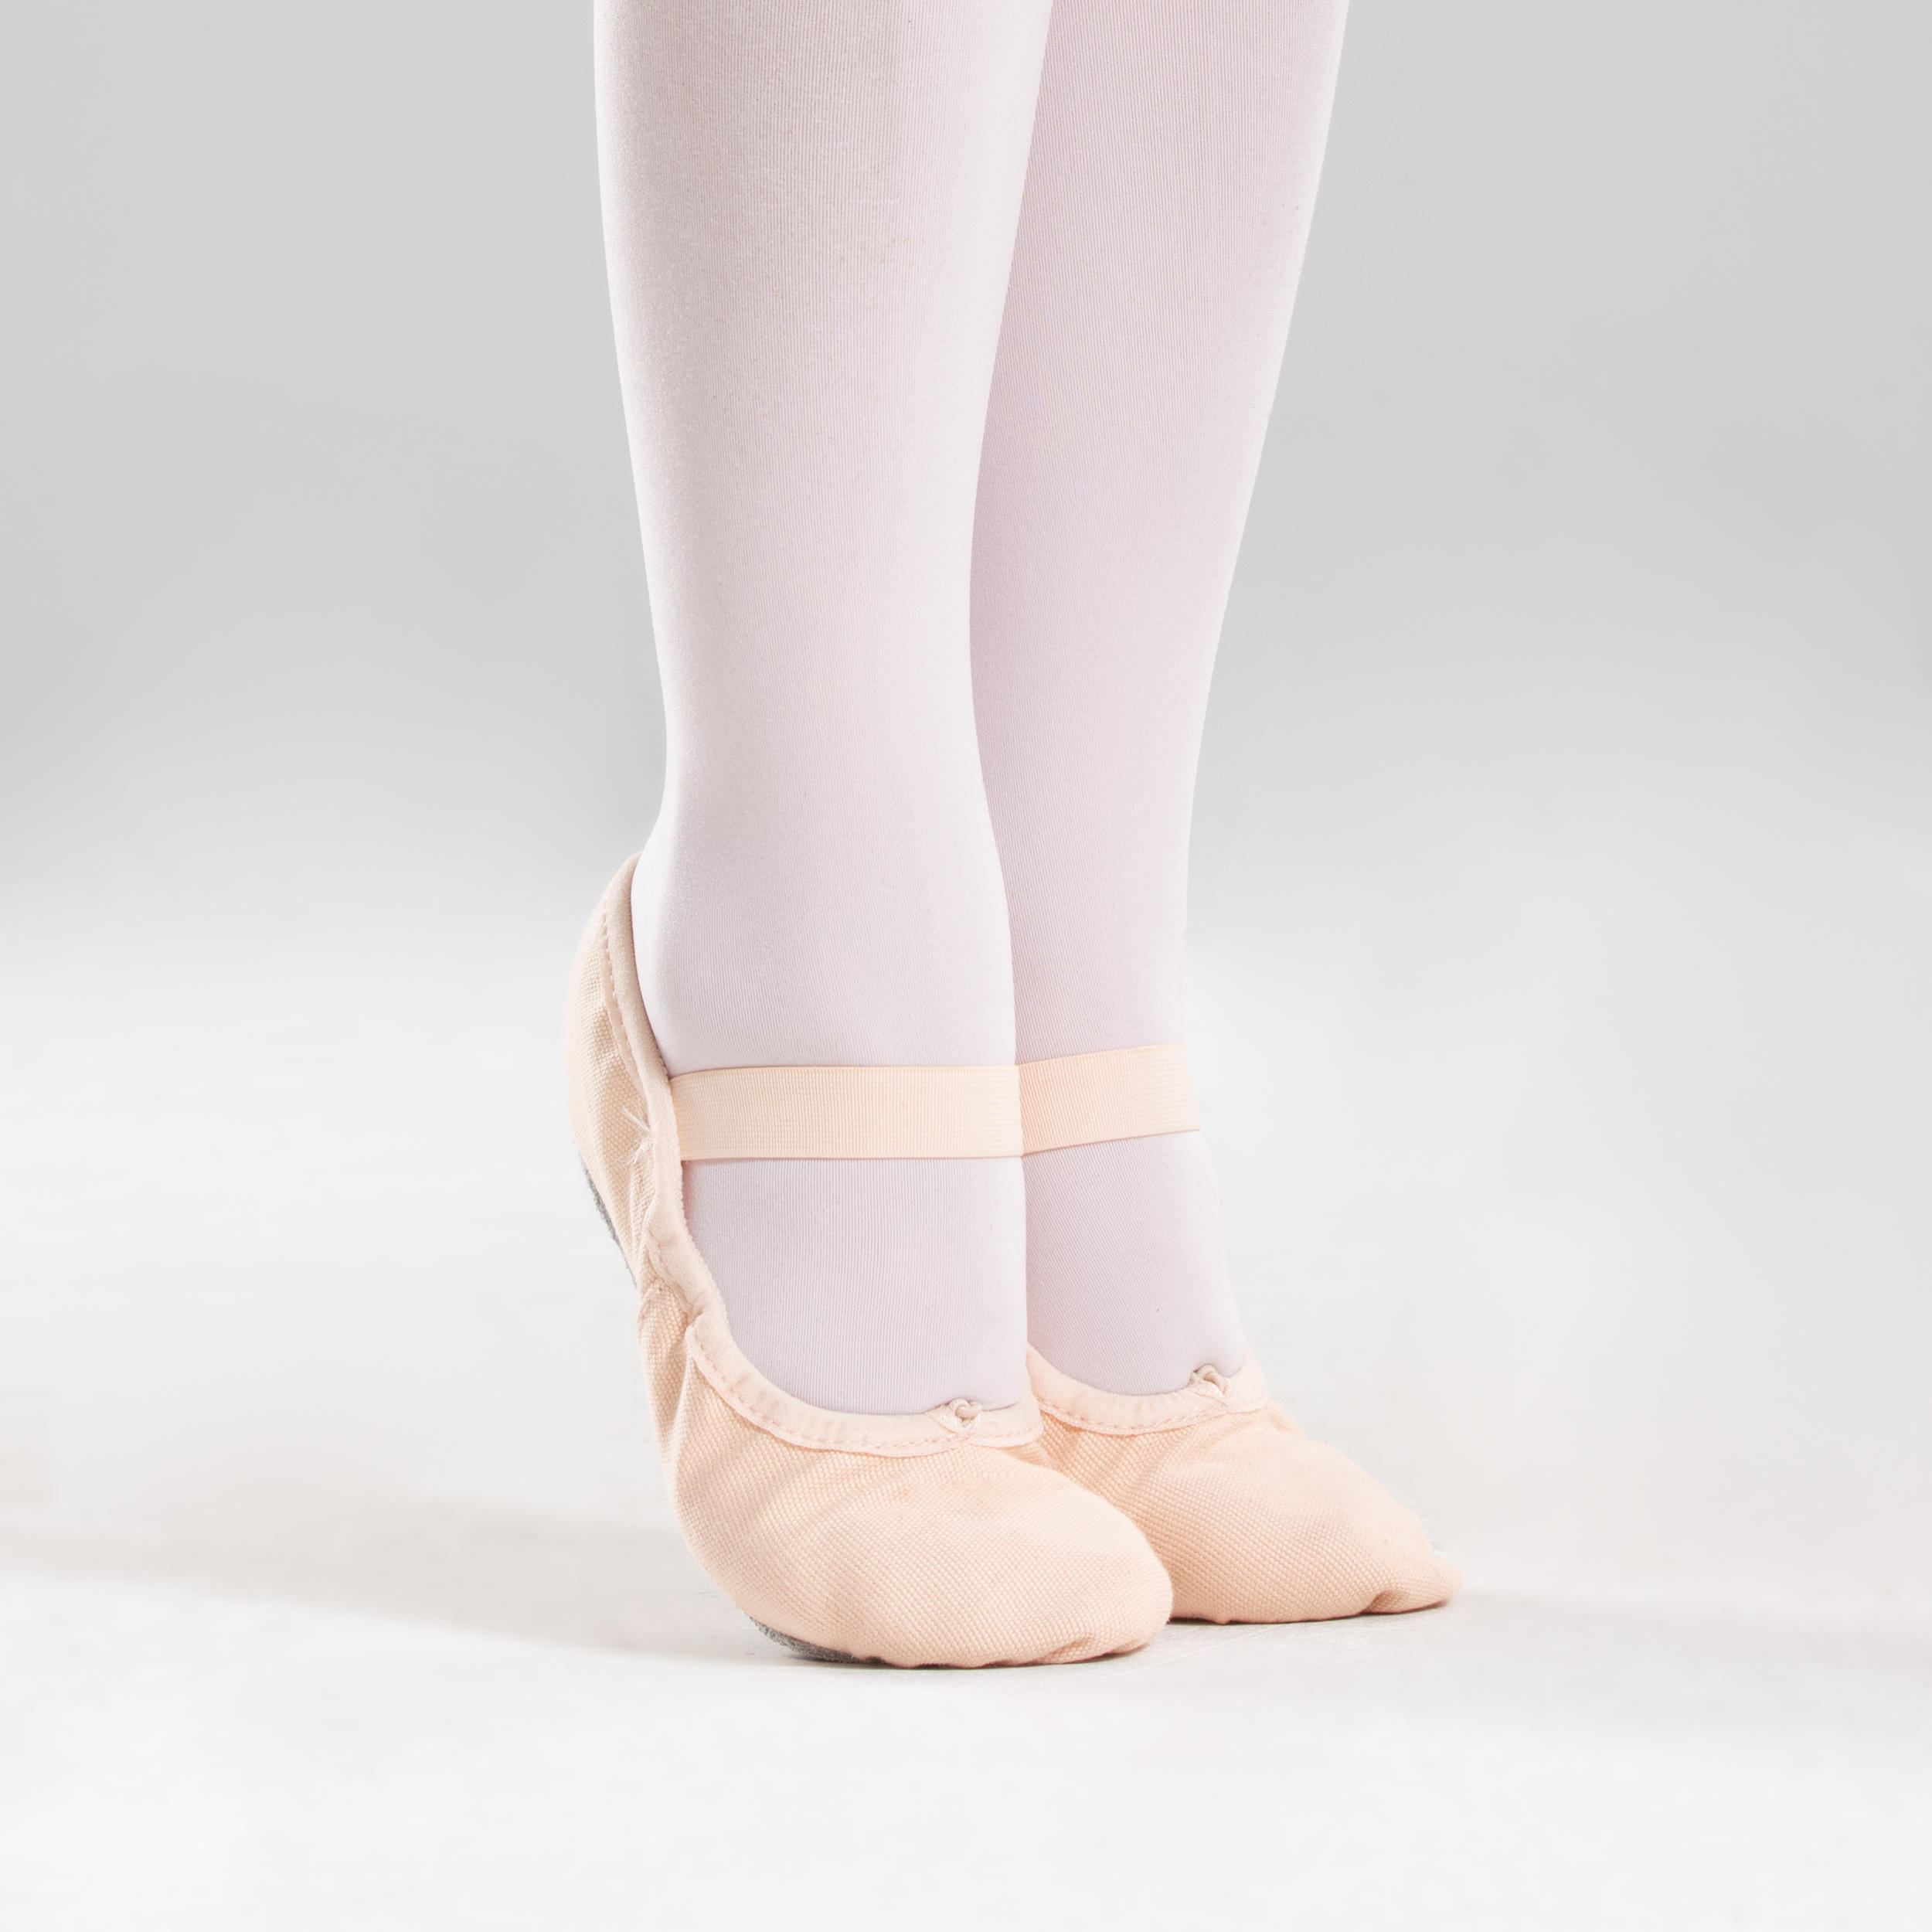 Soudittur Zapatillas de Ballet Suela Partida de Cuero Calzado de Danza para Niña y Mujer Adultos Tallas 21-44 